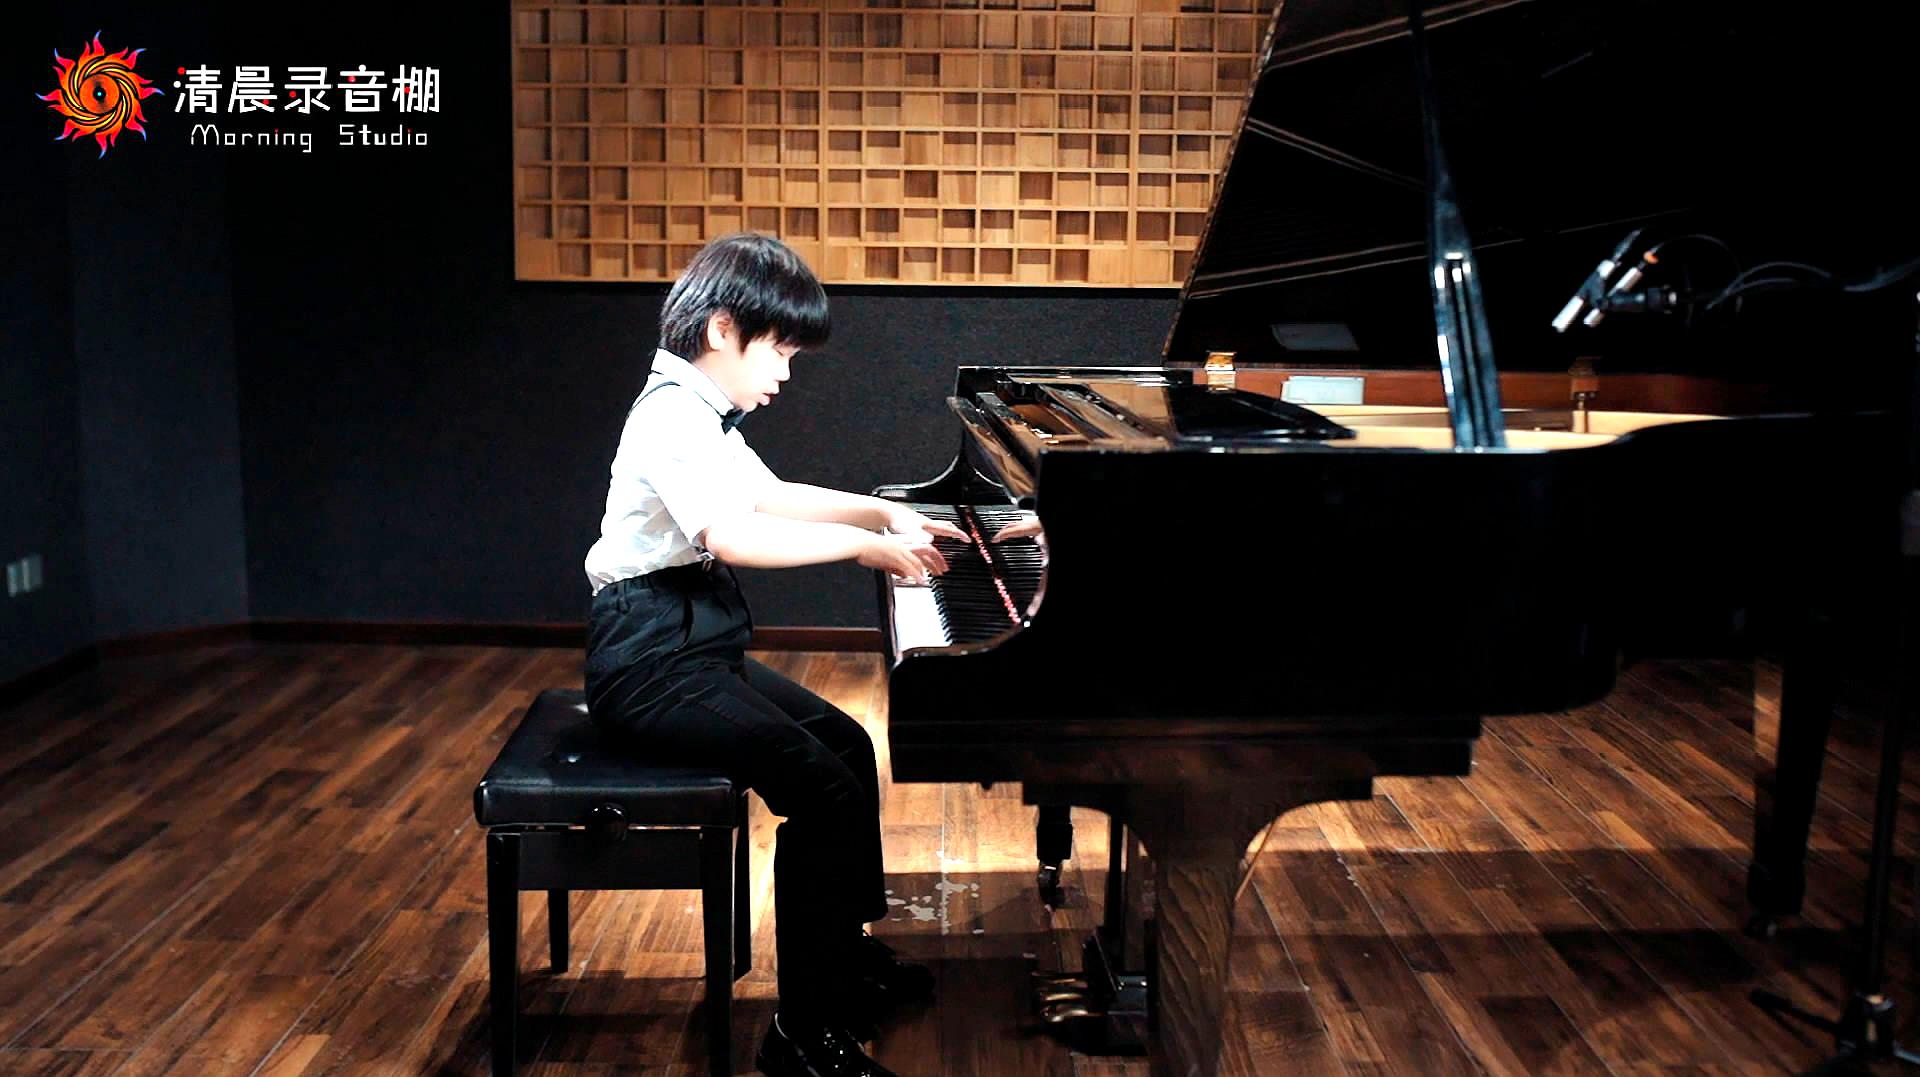 [图]8岁宝宝演奏《巴赫第三号法国组曲》,手型非常漂亮!未来钢琴家